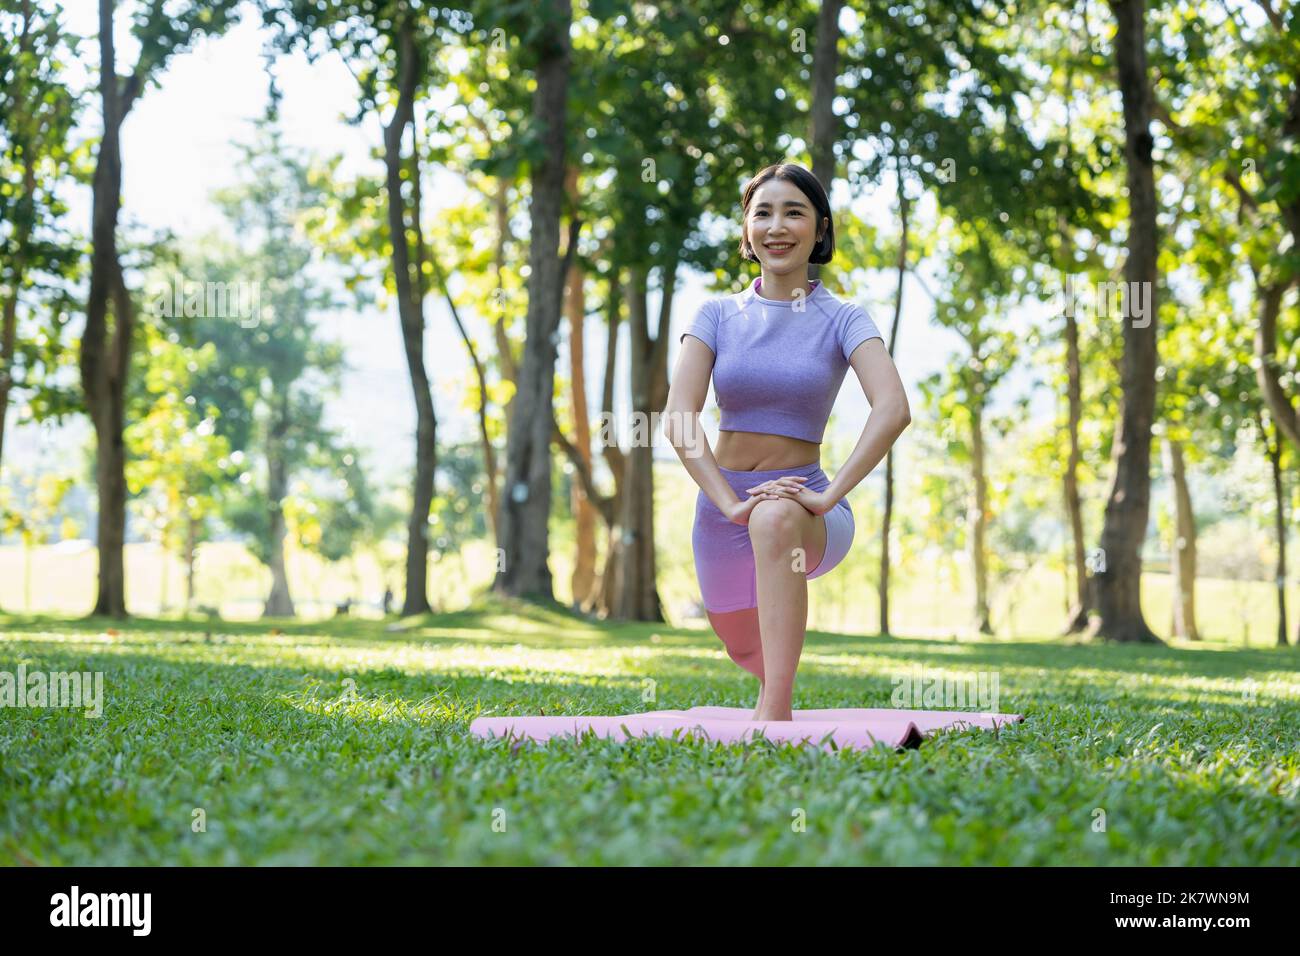 Personnes matures et en bonne santé faisant du yoga au parc. Femme asiatique s'exerçant sur l'herbe verte avec tapis de yoga. Banque D'Images